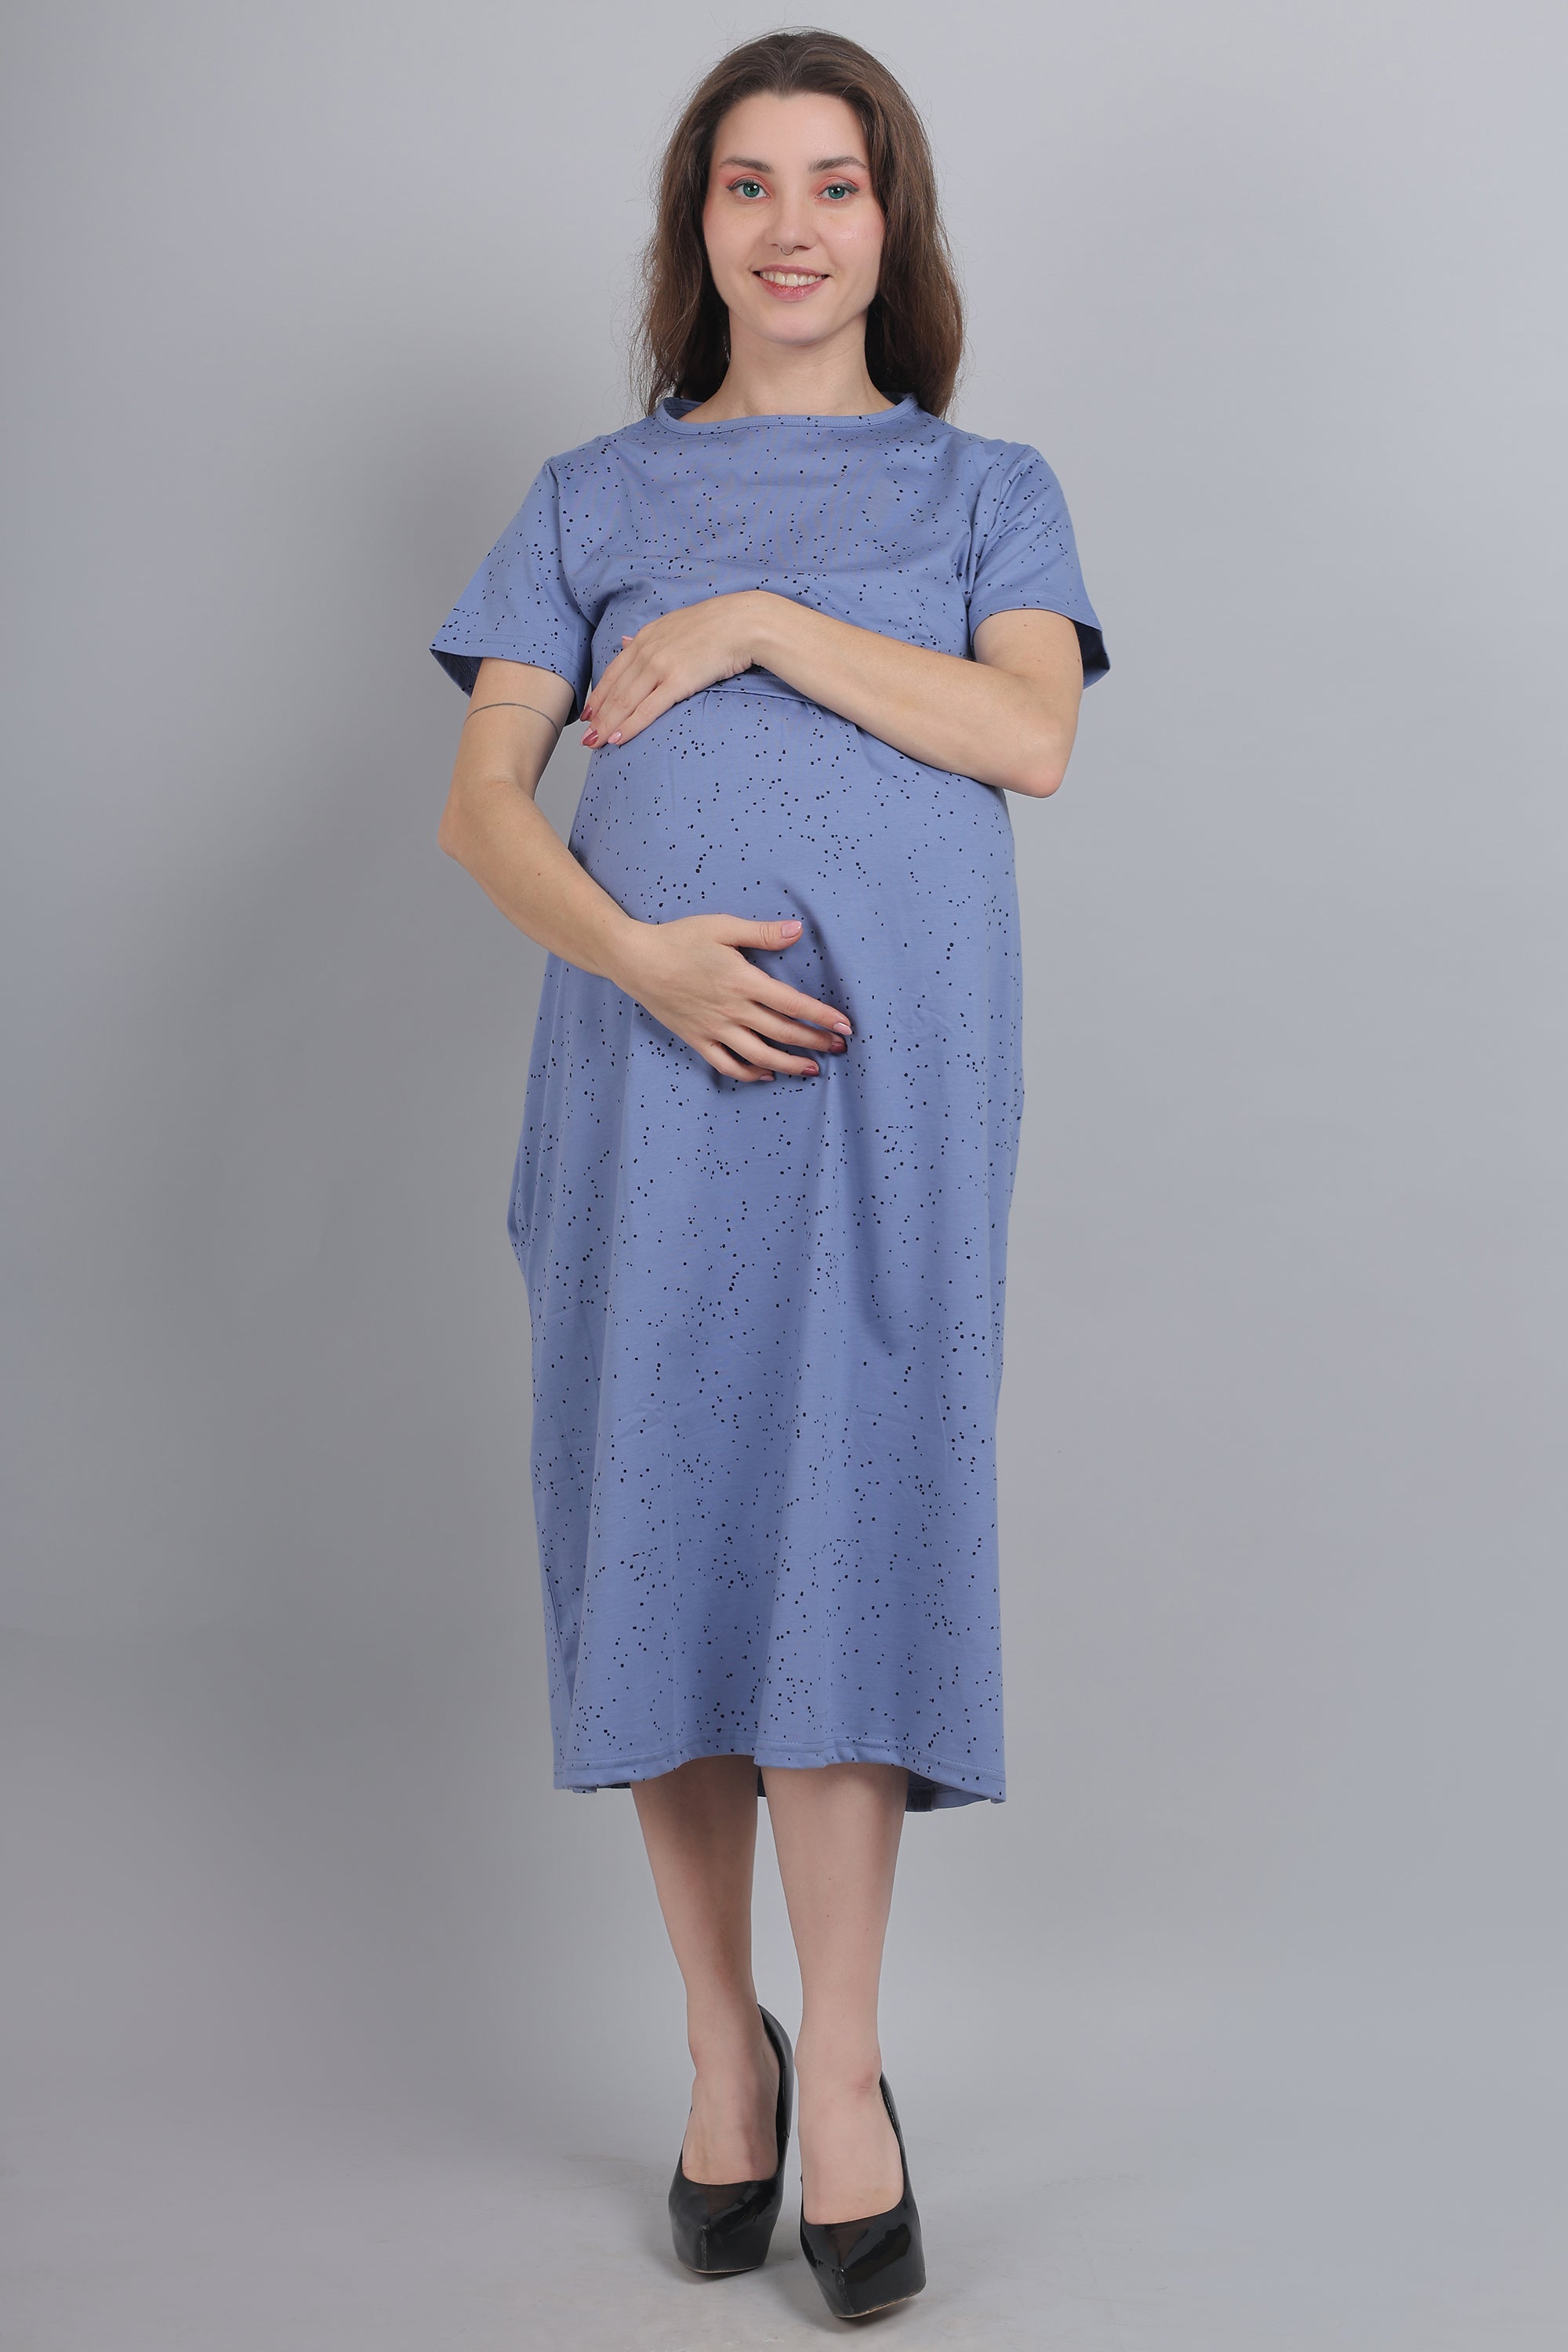 Maternity Nightwear - Buy Maternity Nightwear online in India